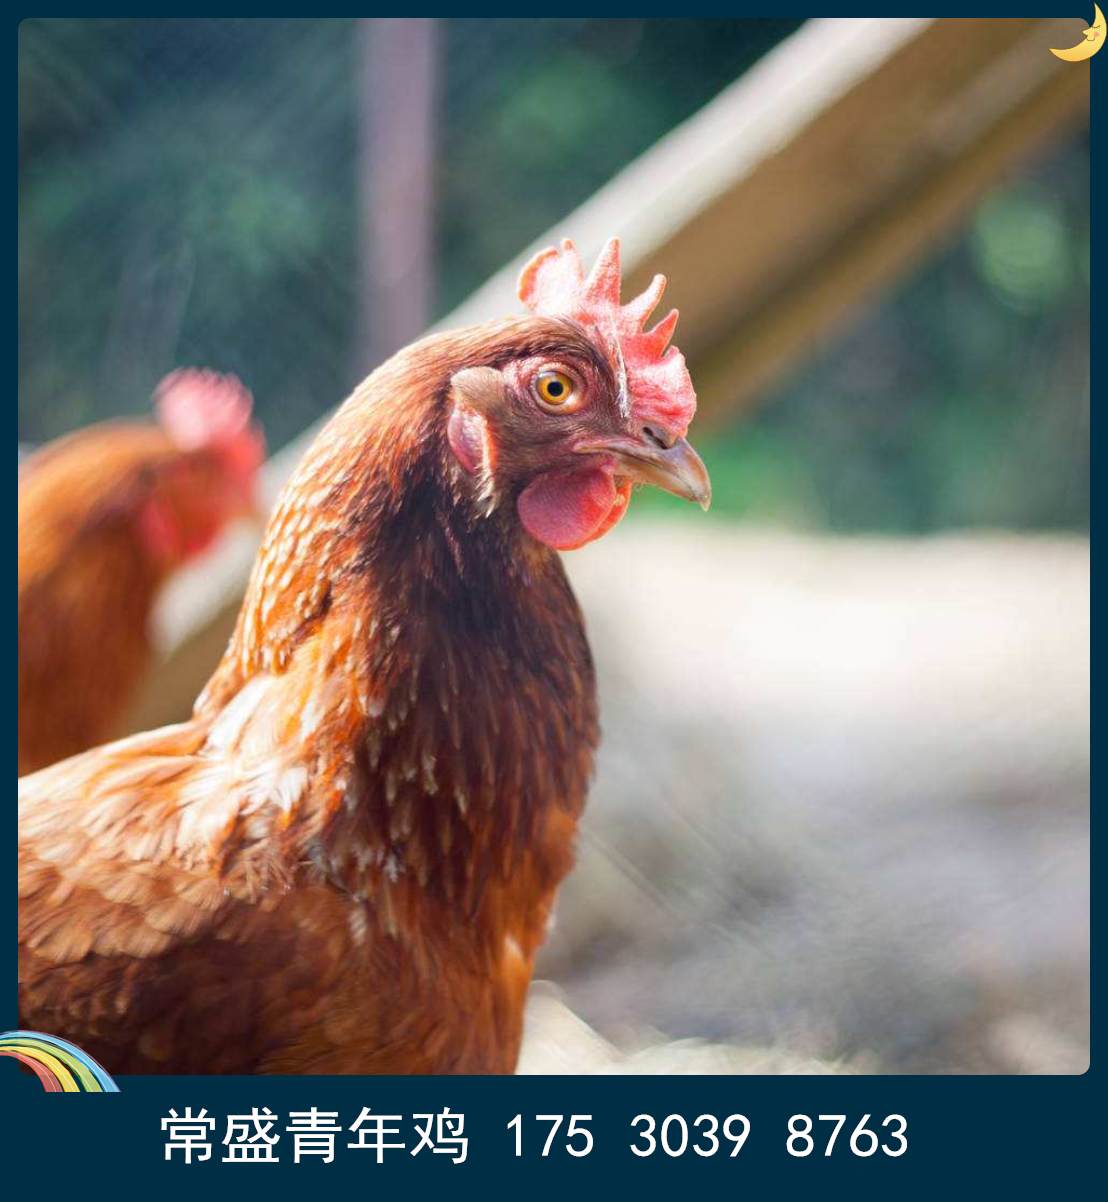 黄冈常盛蛋鸡青年鸡养殖场常年供应各品种青年鸡 育成鸡 鸡苗 脱温鸡2